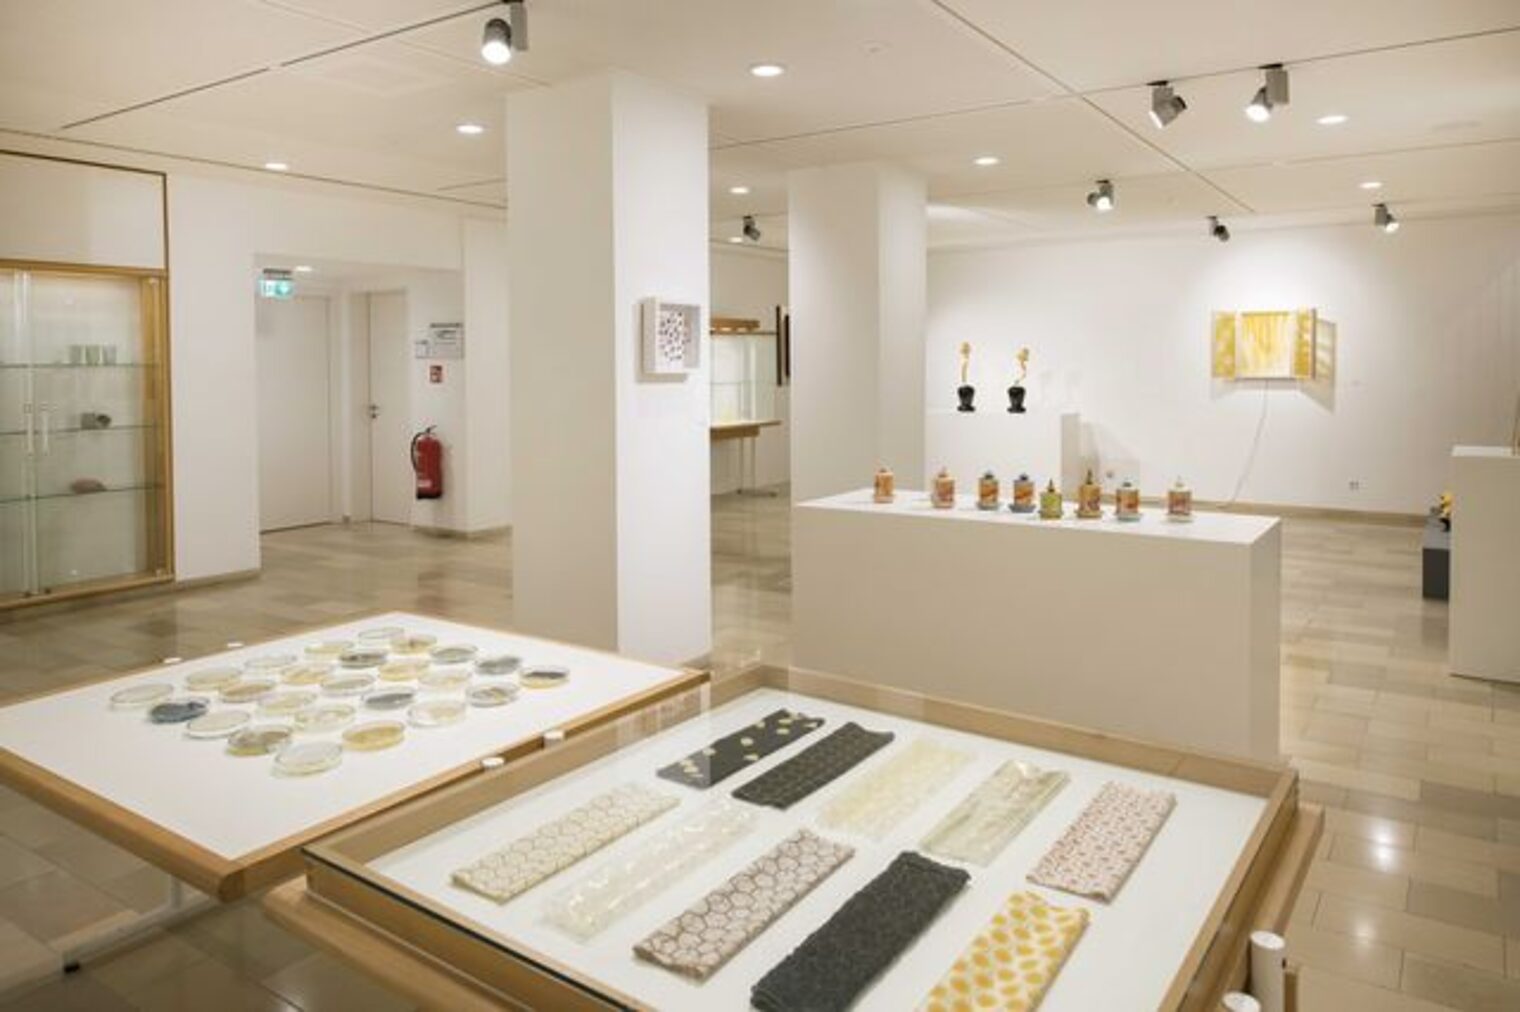 Galerie Handwerk - Bienengold